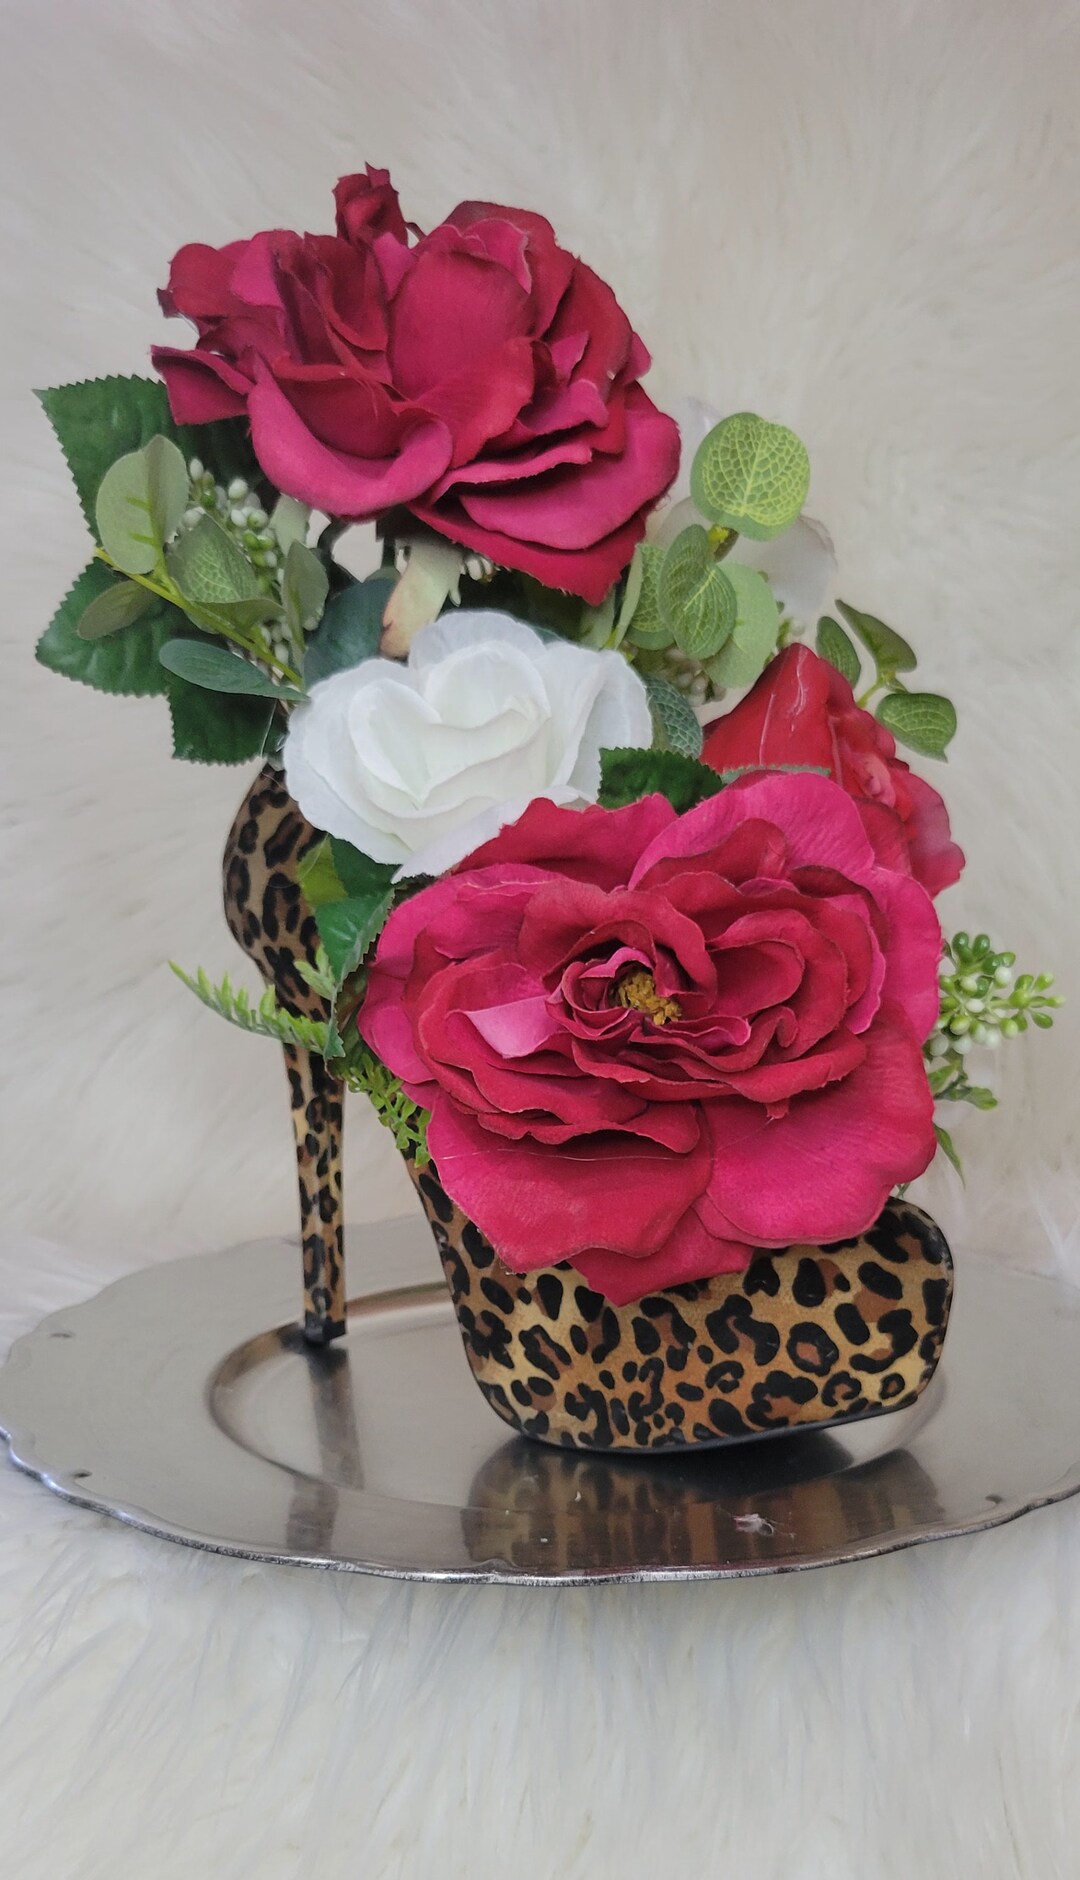 Cheetah Print High Heel Vase, Centerpiece, Shoe Bouquet, Unique Floral ...